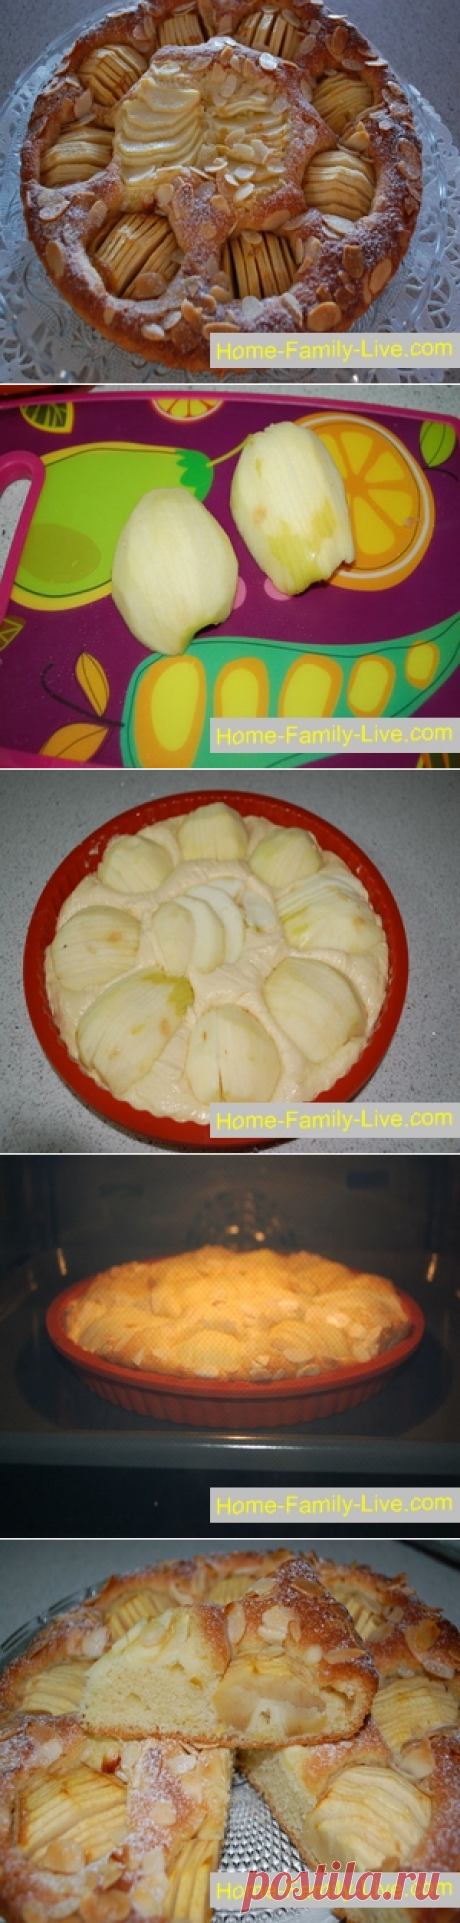 Пирог с яблоком/Сайт с пошаговыми рецептами с фото для тех кто любит готовить